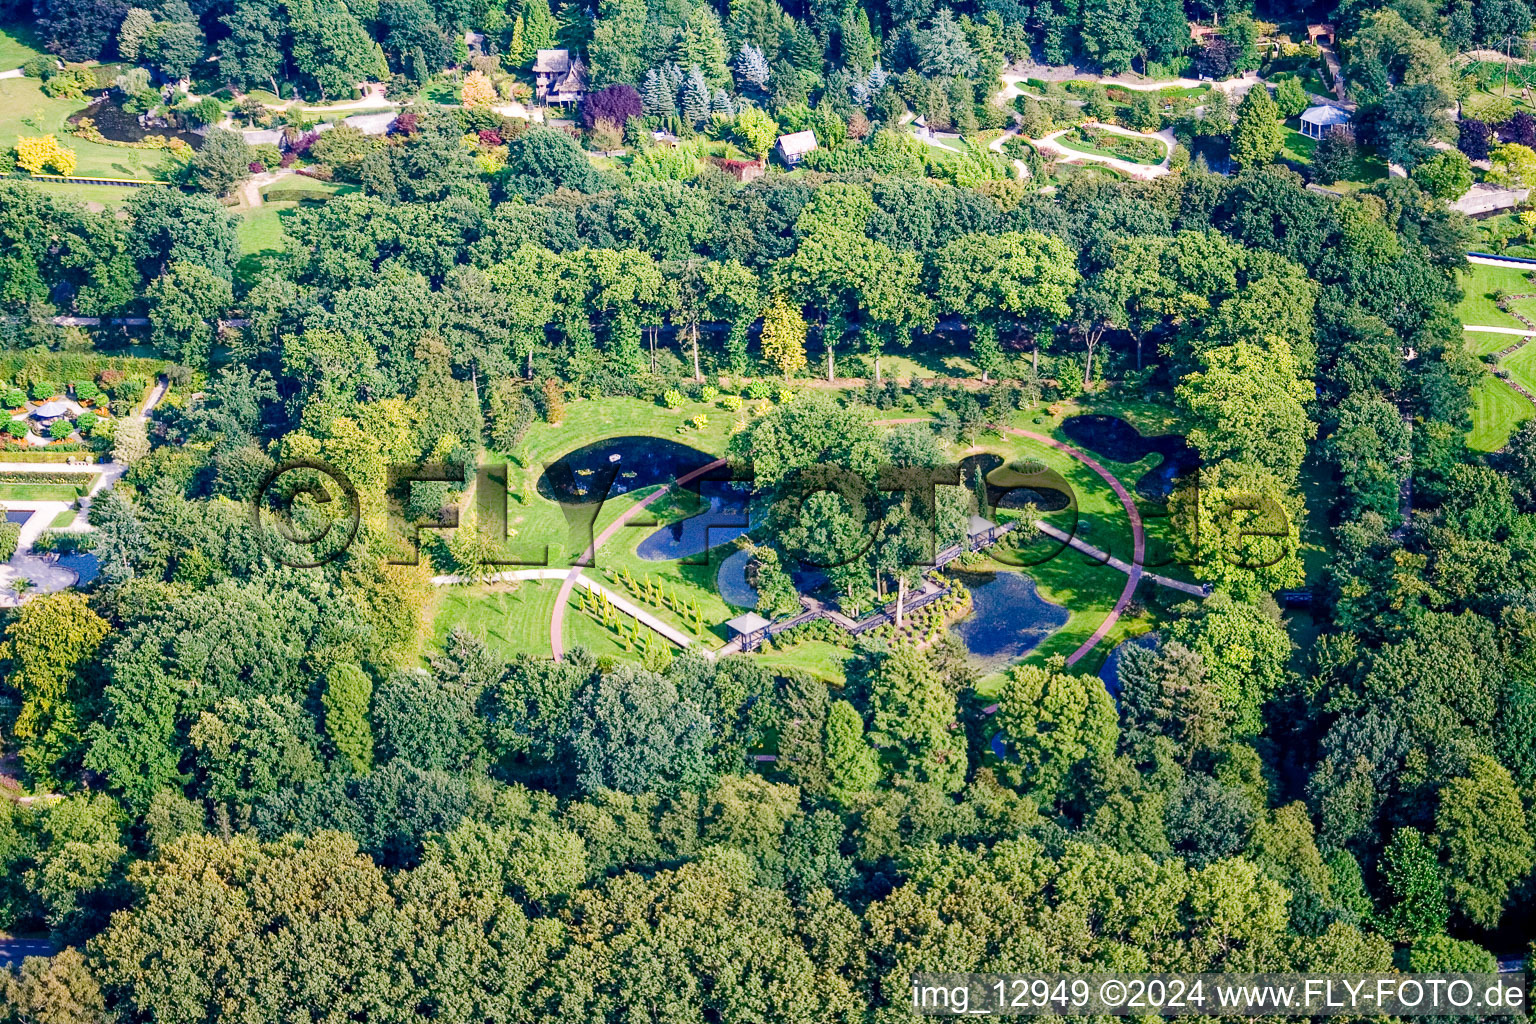 Luftbild von Gebäude und Schloßpark- Anlagen des Wasserschloß Kasteeltuinen Arcen in Arcen in Limburg, Niederlande